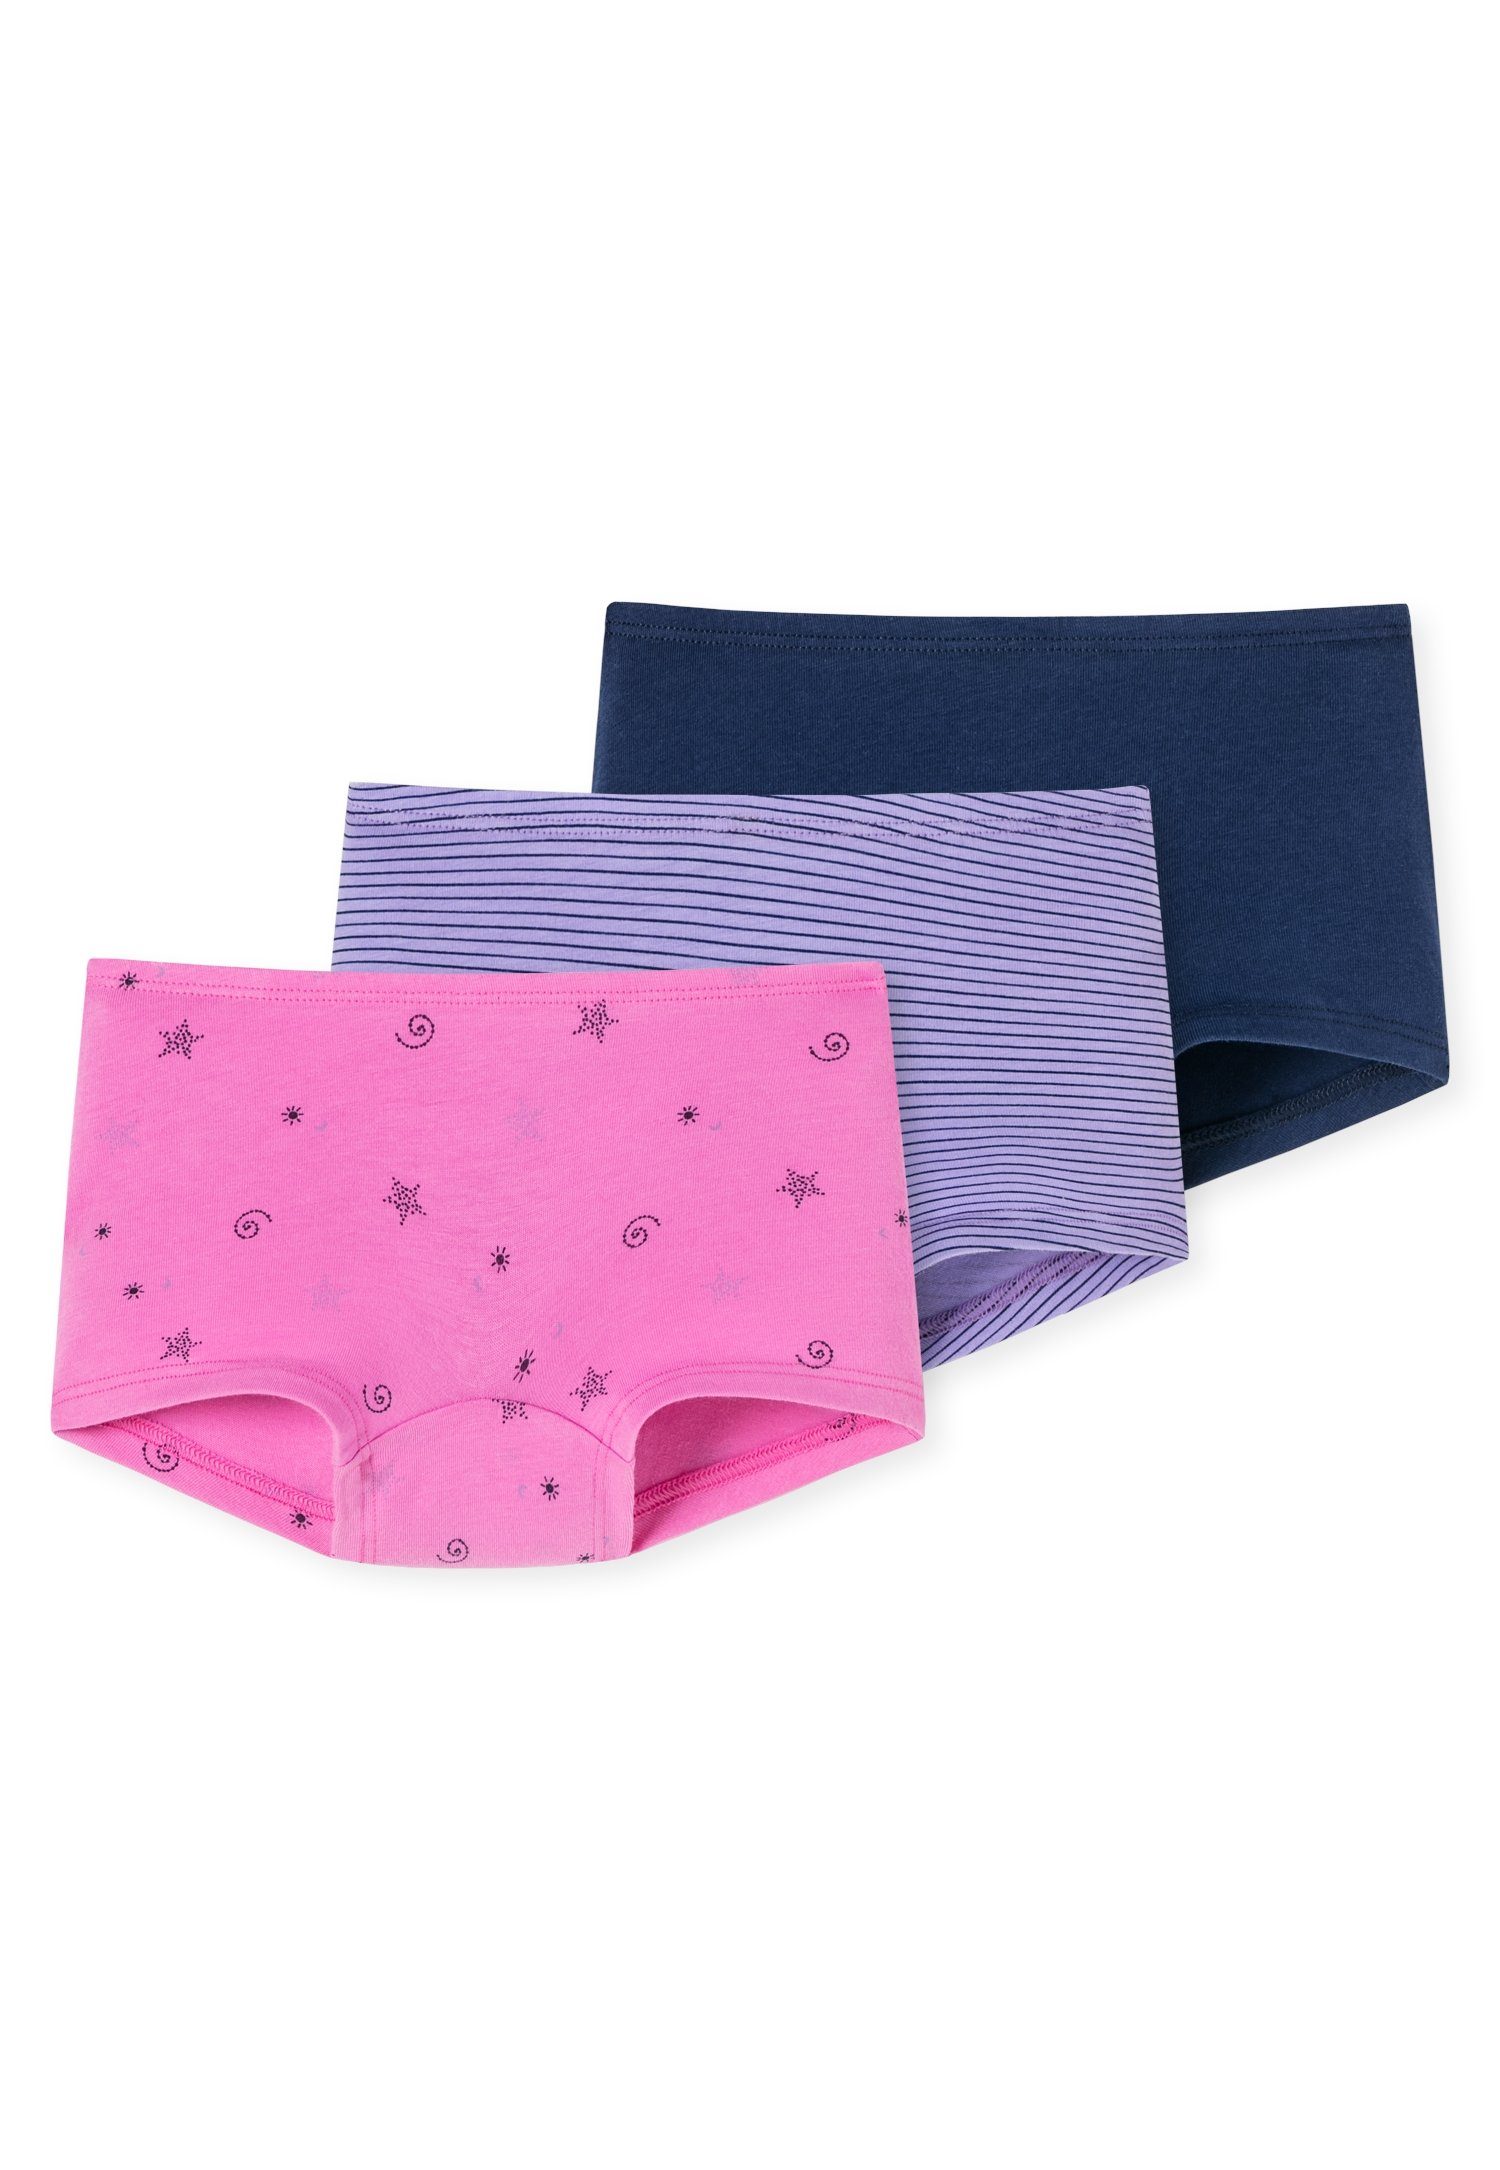 Schiesser Boxershorts (3er-Pack) mit pink/violett Bund softem